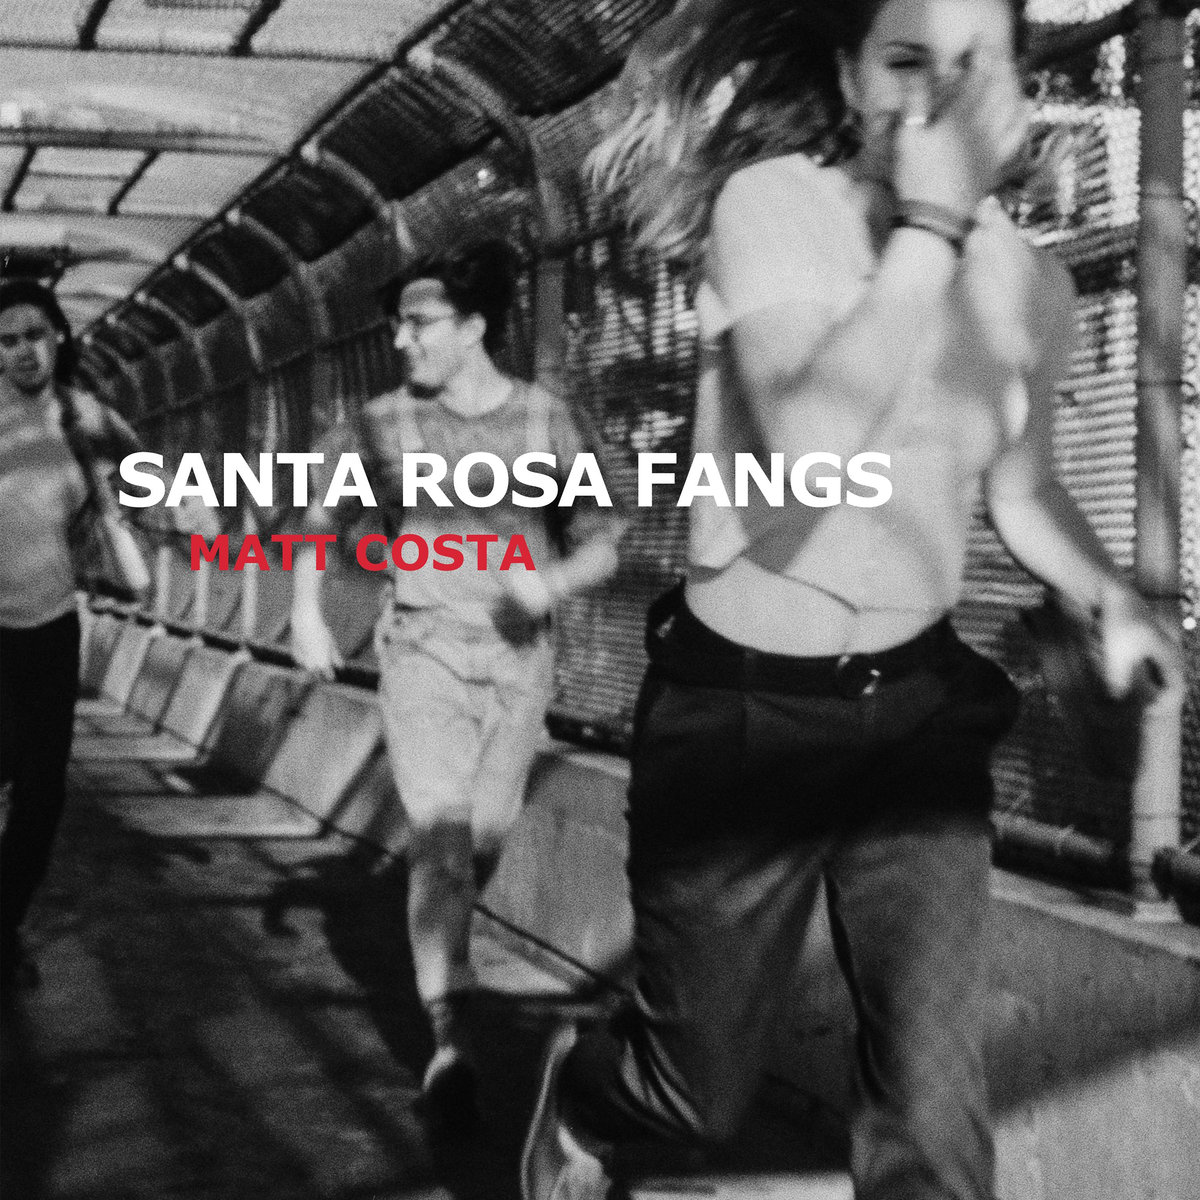 "Matt Costa 'Santa Rosa Fangs' (May 18)"